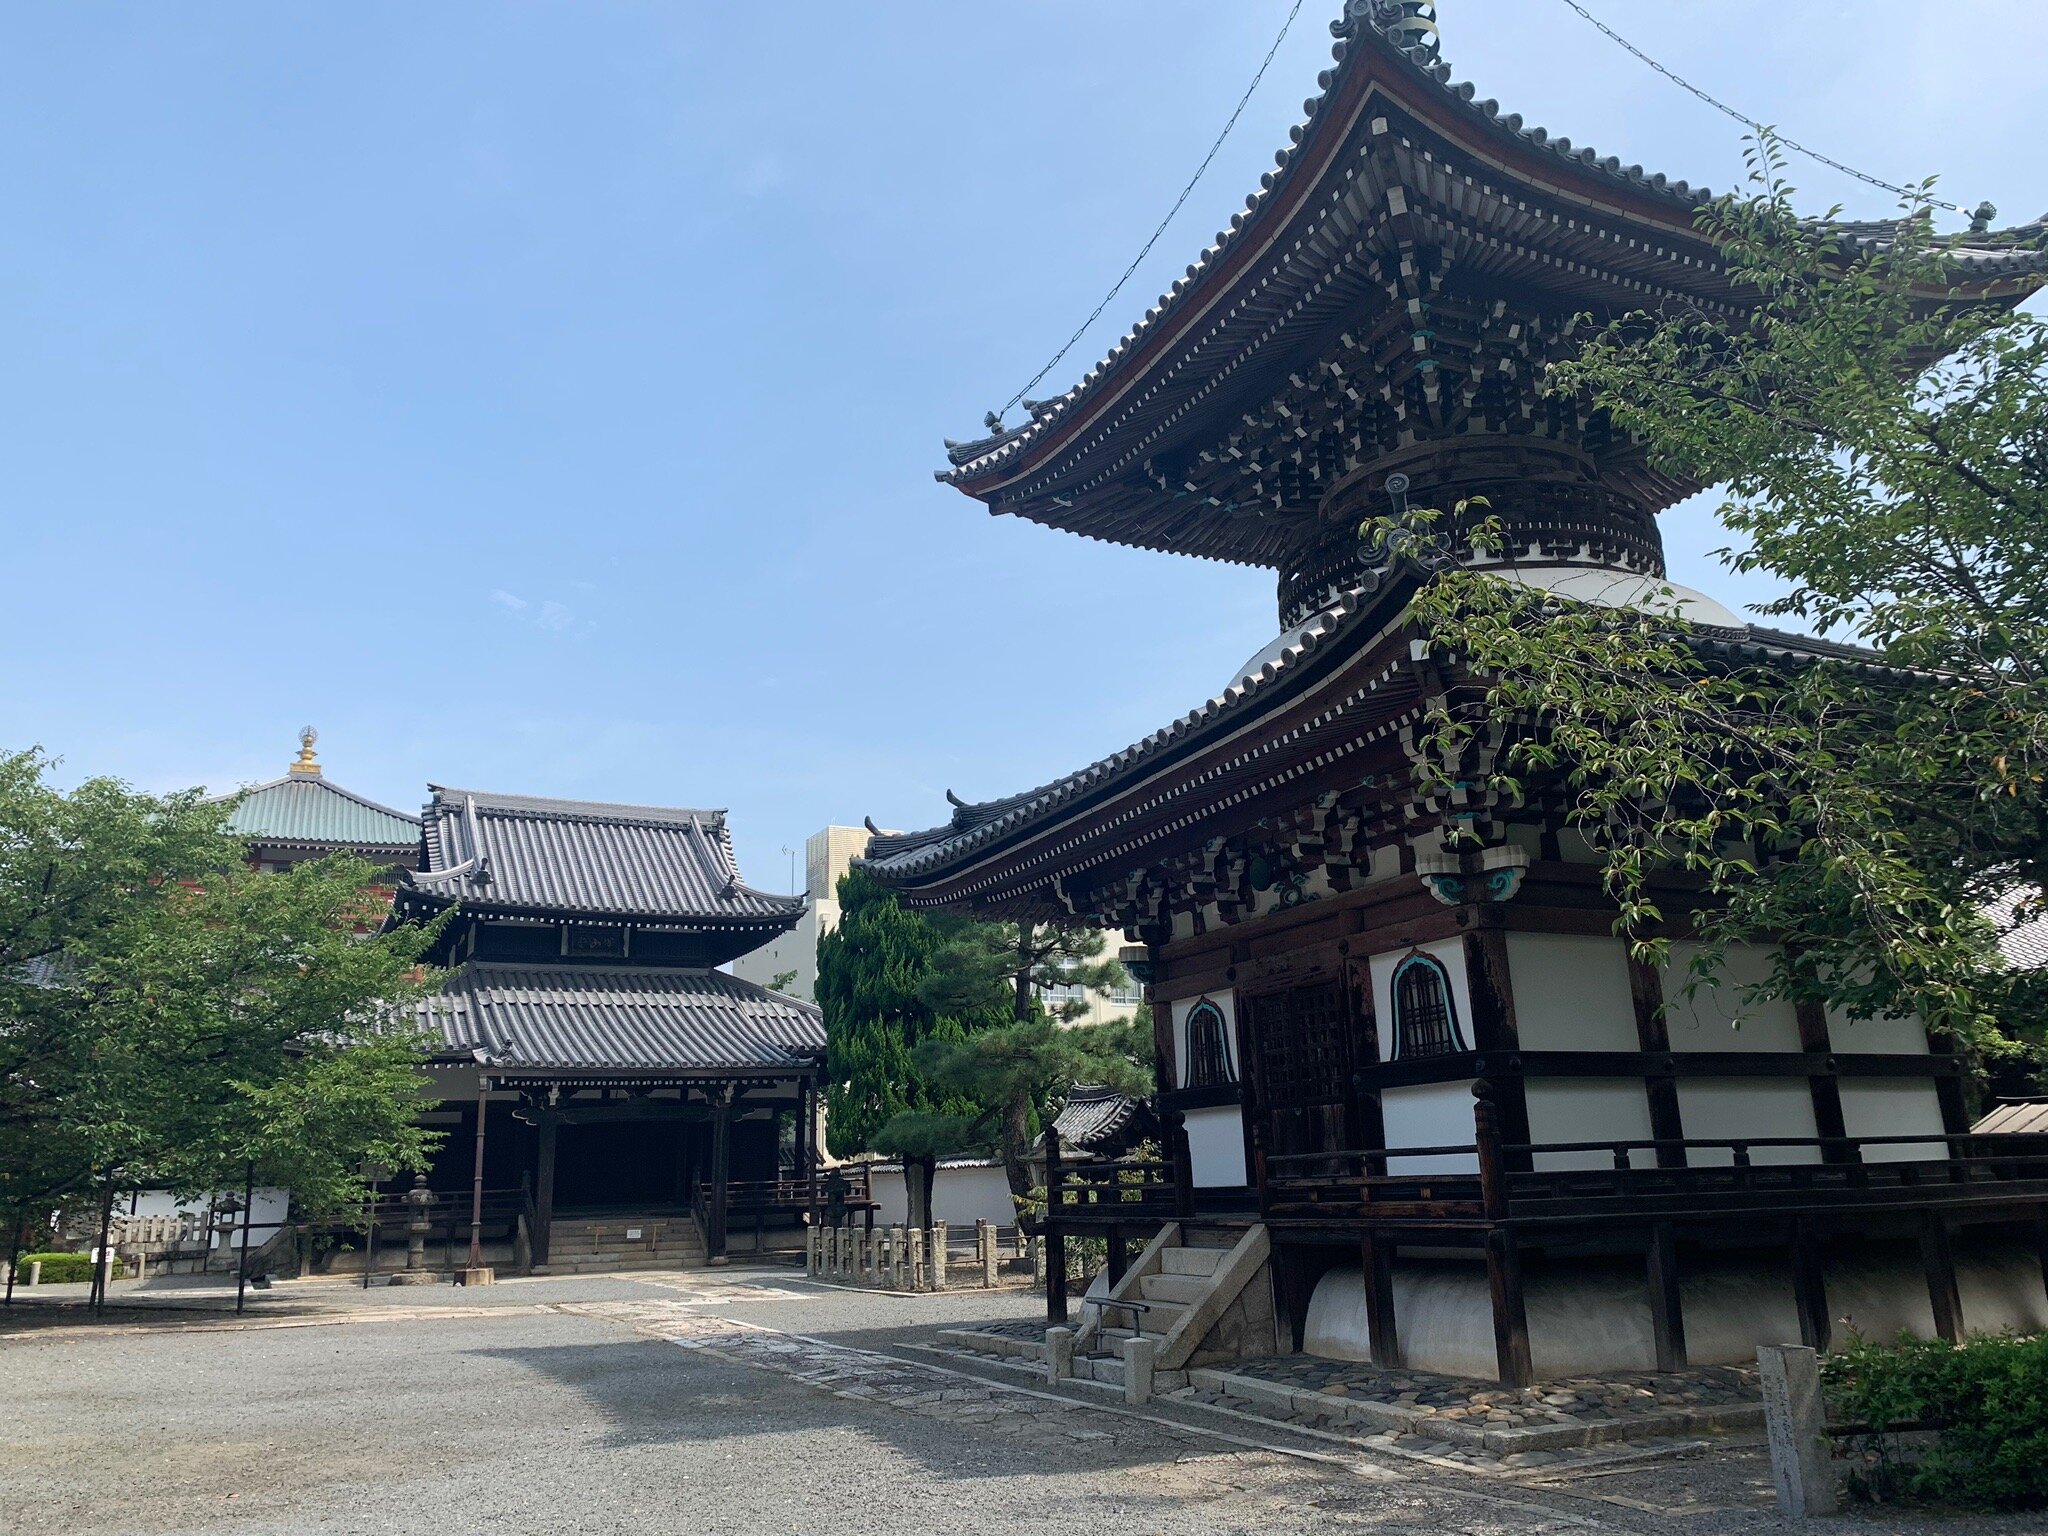 本法寺(京都市) - 旅游景点点评- Tripadvisor